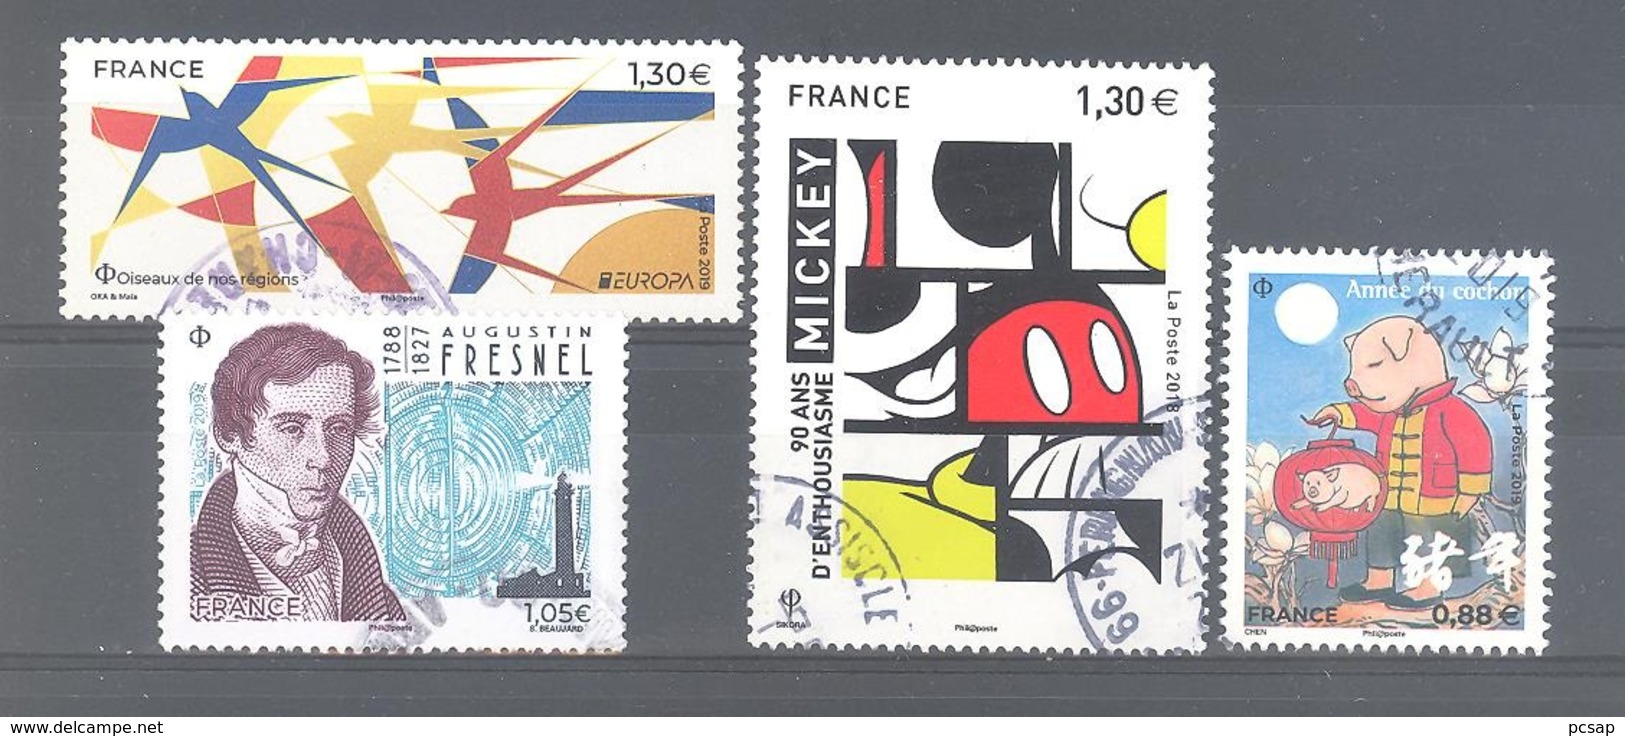 France Oblitérés : Oiseaux De Nos Régions - Augustin Fresnel - Année Du Cochon 0,88 Pt Format & N°5259 (cachet Rond) - Gebruikt